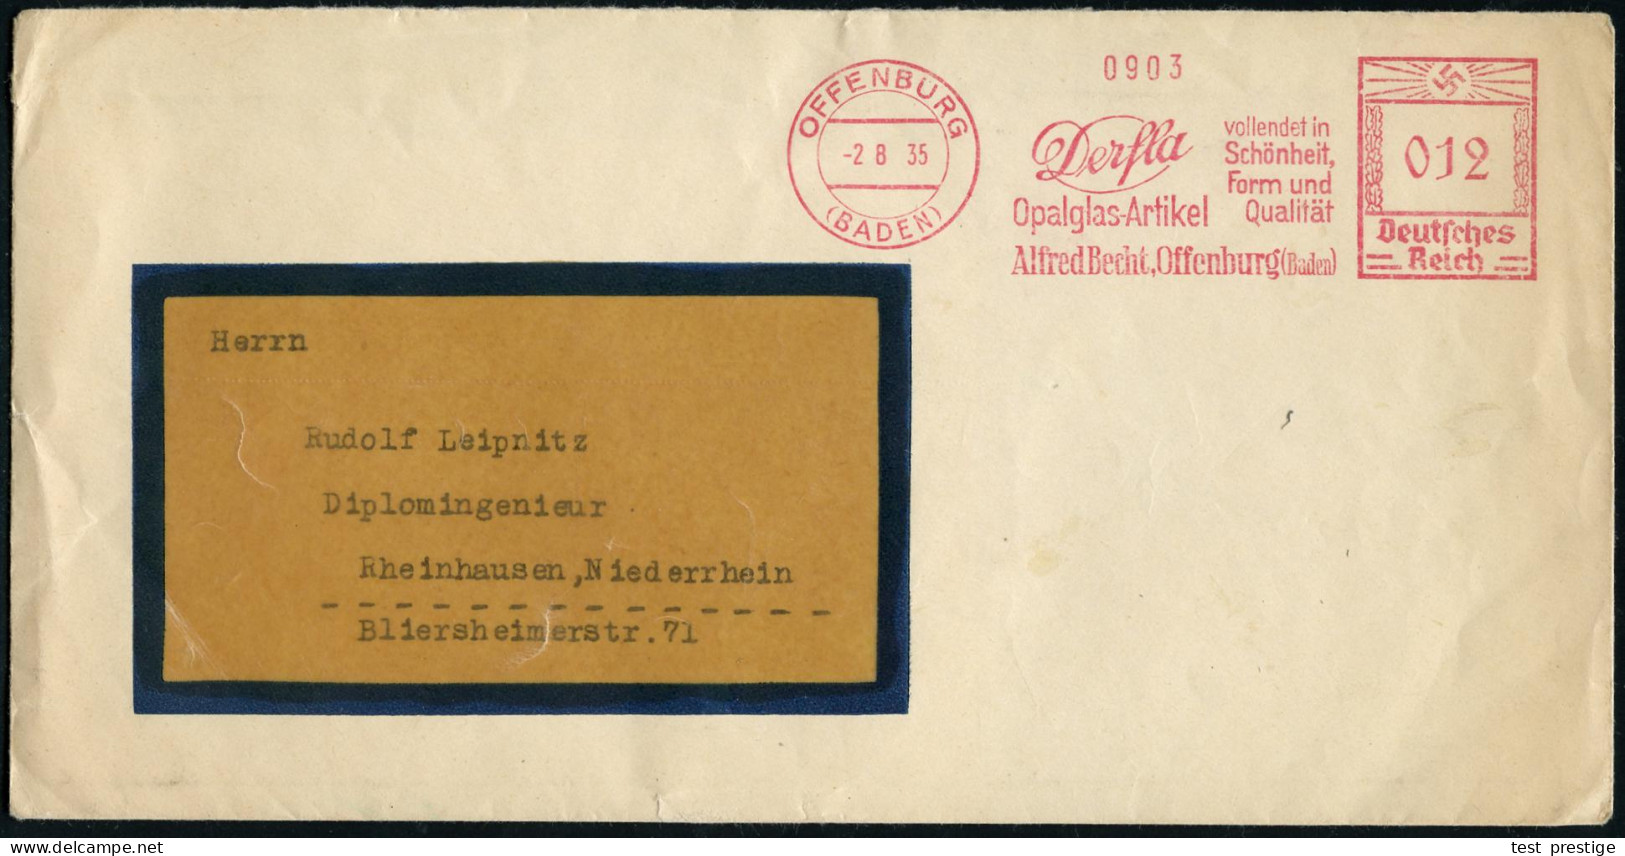 OFFENBURG/ (BADEN)/ Derfla/ Opalglas-Artikel/ Alfred Becht.. 1935 (2.8.) AFS Francotyp + Rs. Produkt-Verschluß-Oblate Mi - Verres & Vitraux